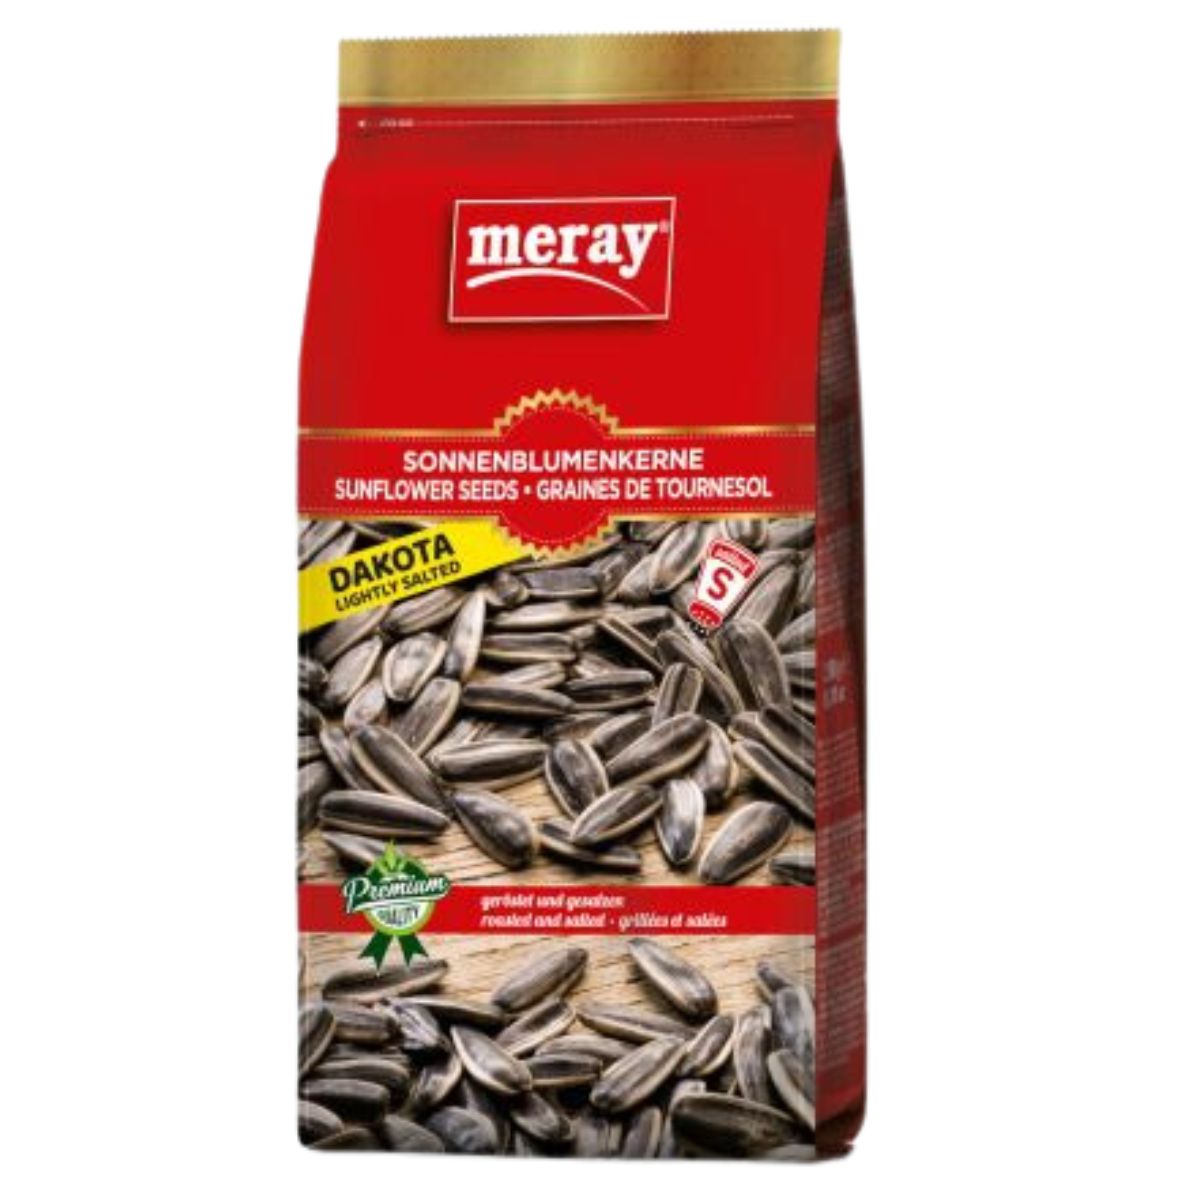 Packaging of Meray - Lightly Salted Dakota Sunflower Seeds - 250g.